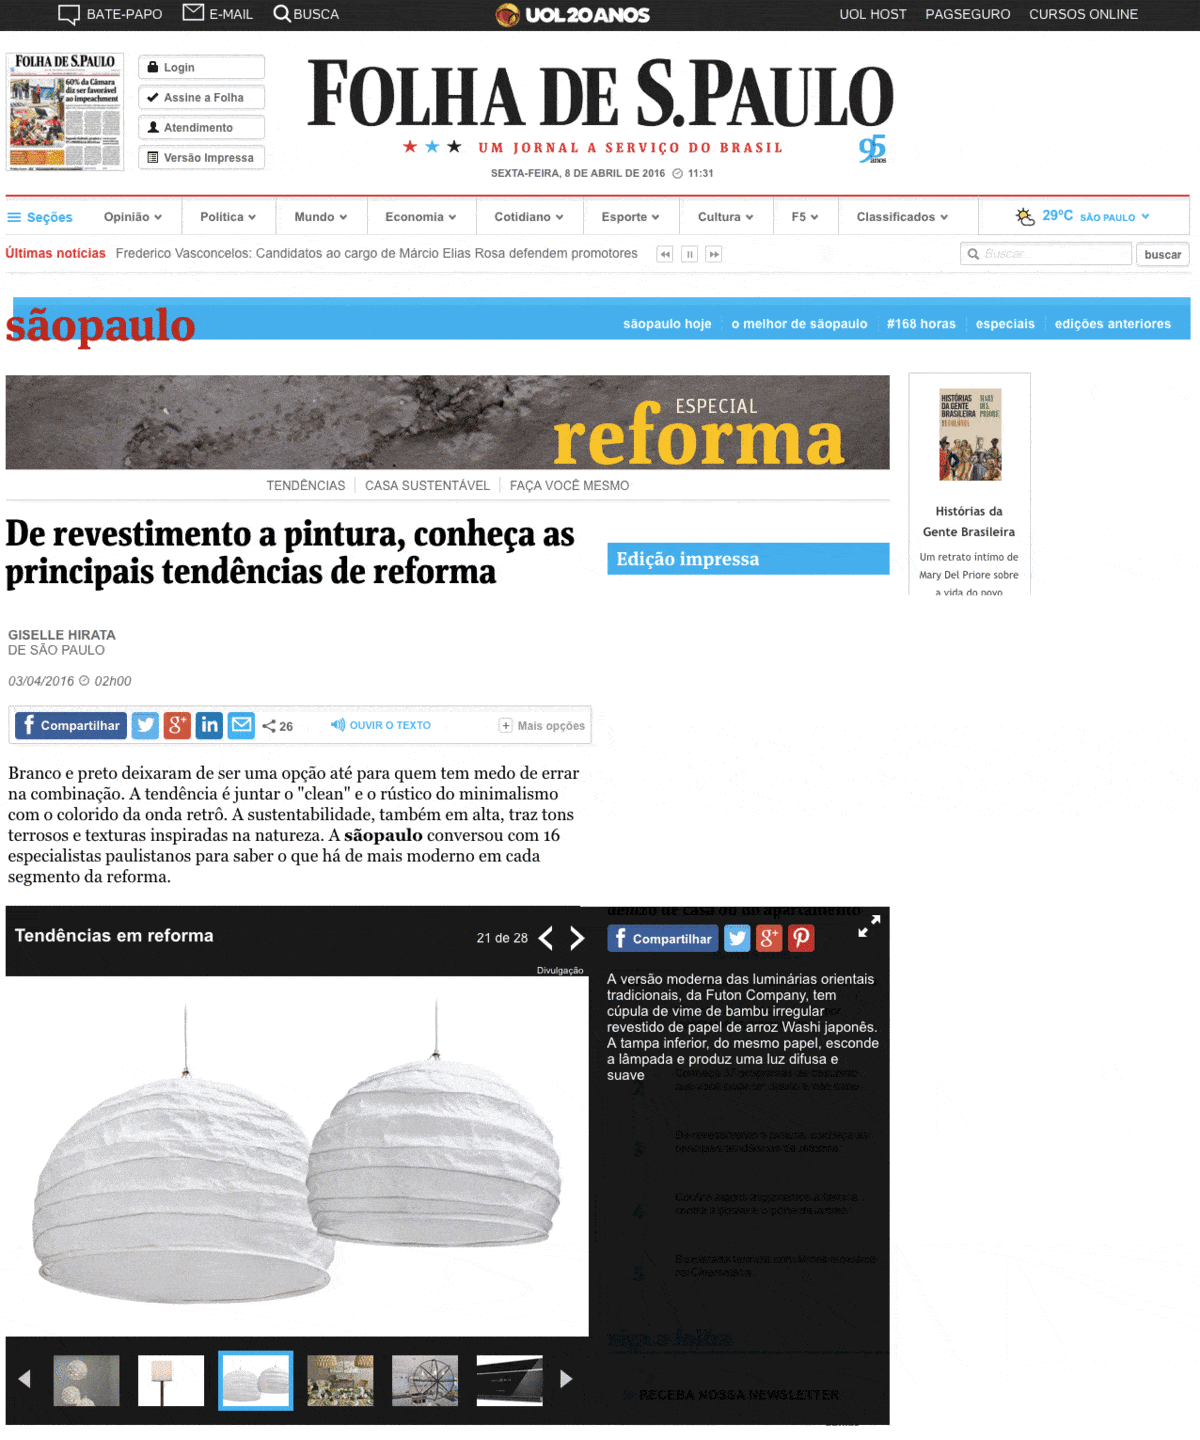 Site Folha de Sao Paulo 03 abril 2016 01